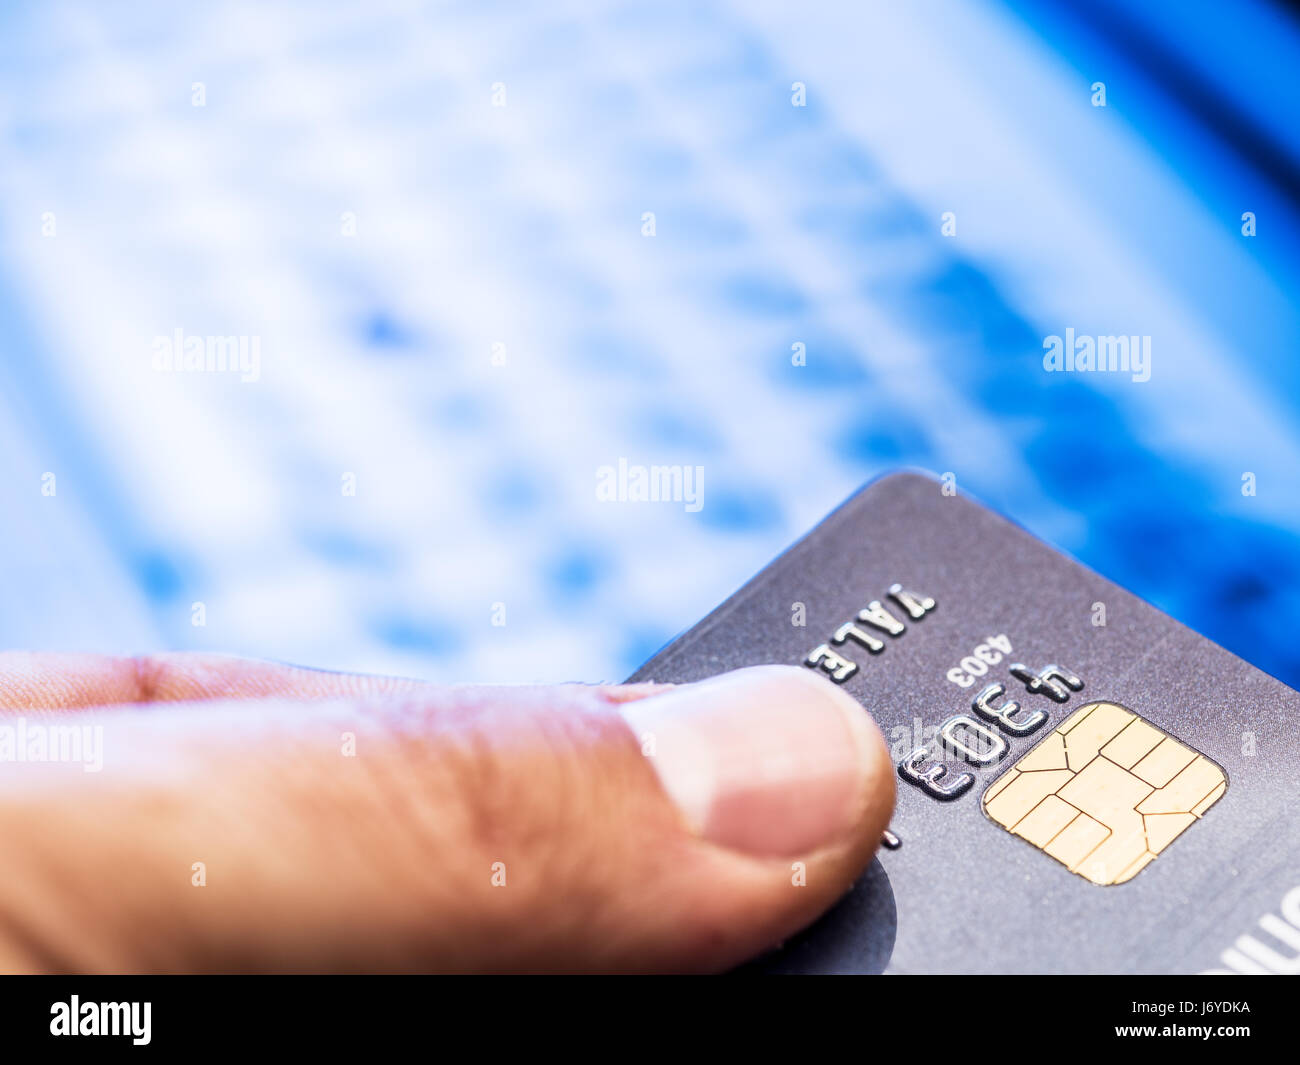 Se puede pagar con tarjeta de débito en el extranjero